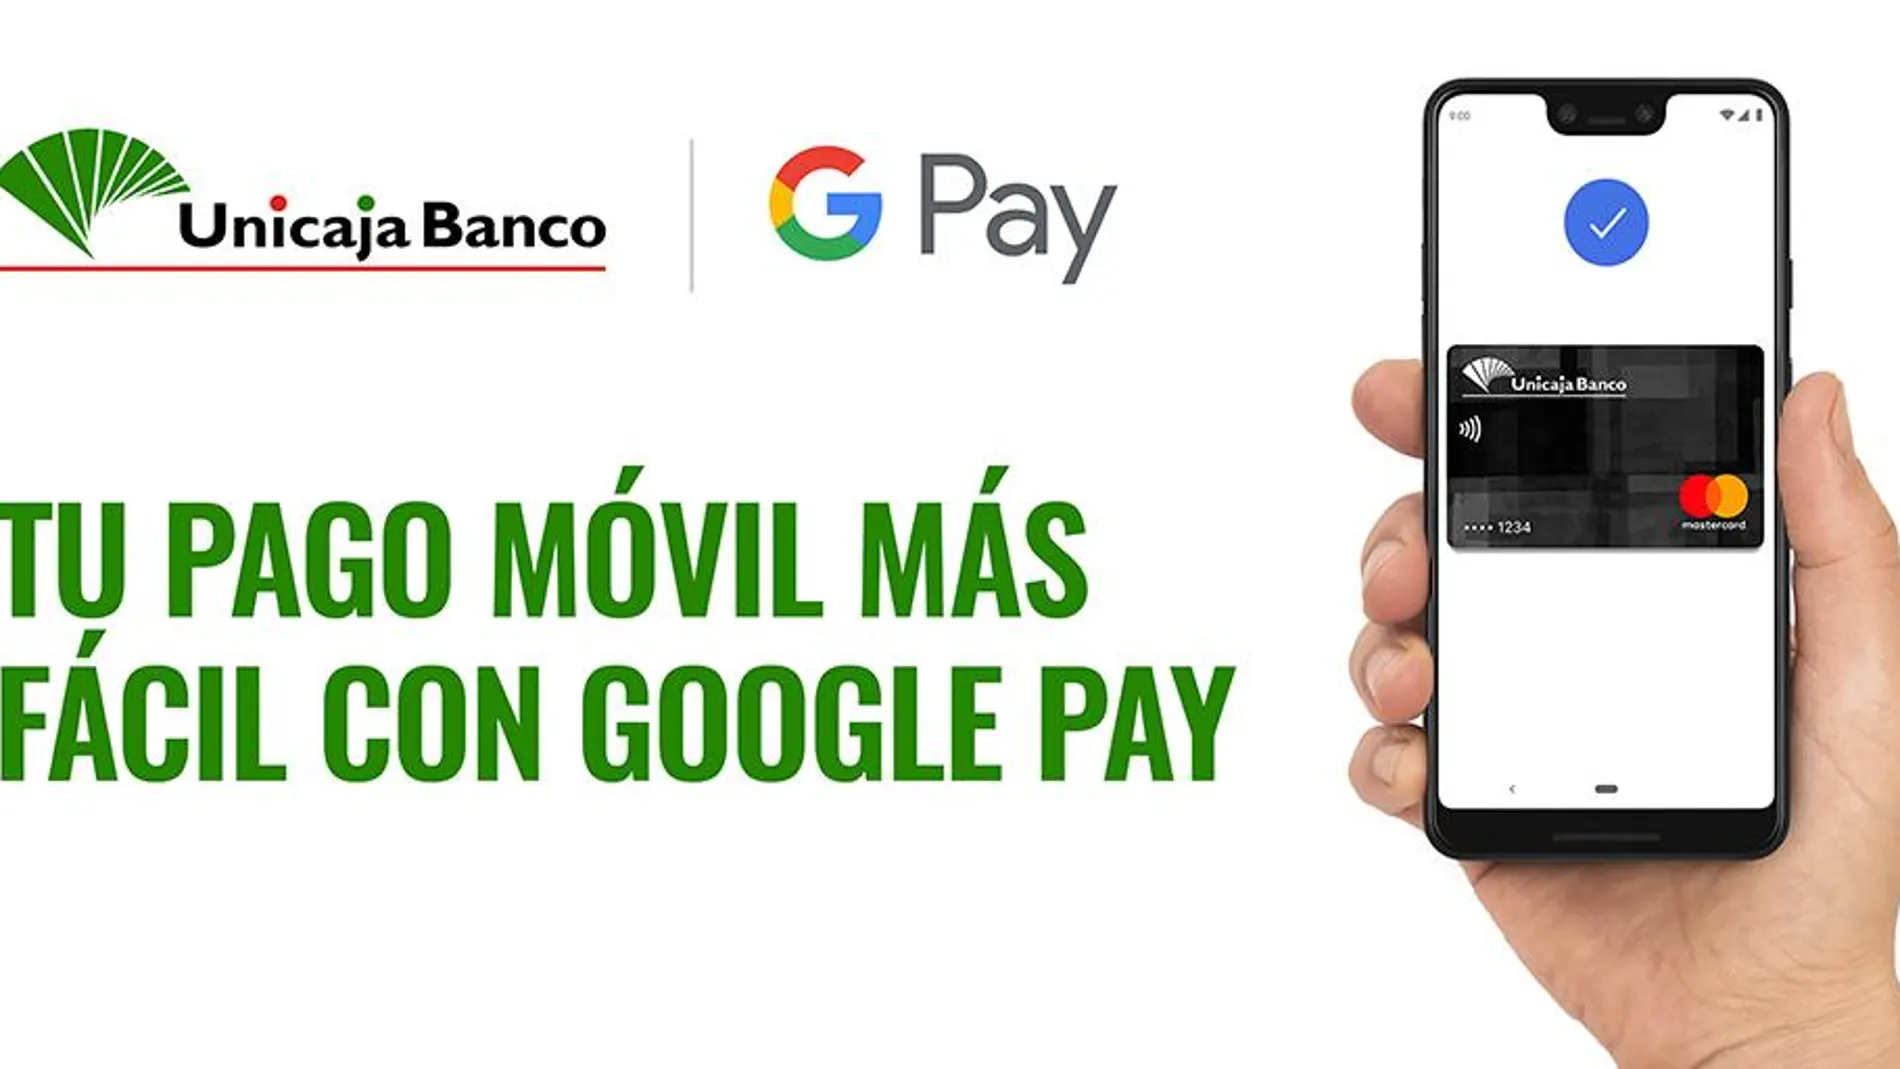 Unicaja Banco ofrece Google Pay para realizar pagos mediante dispositivos móviles / La Razón